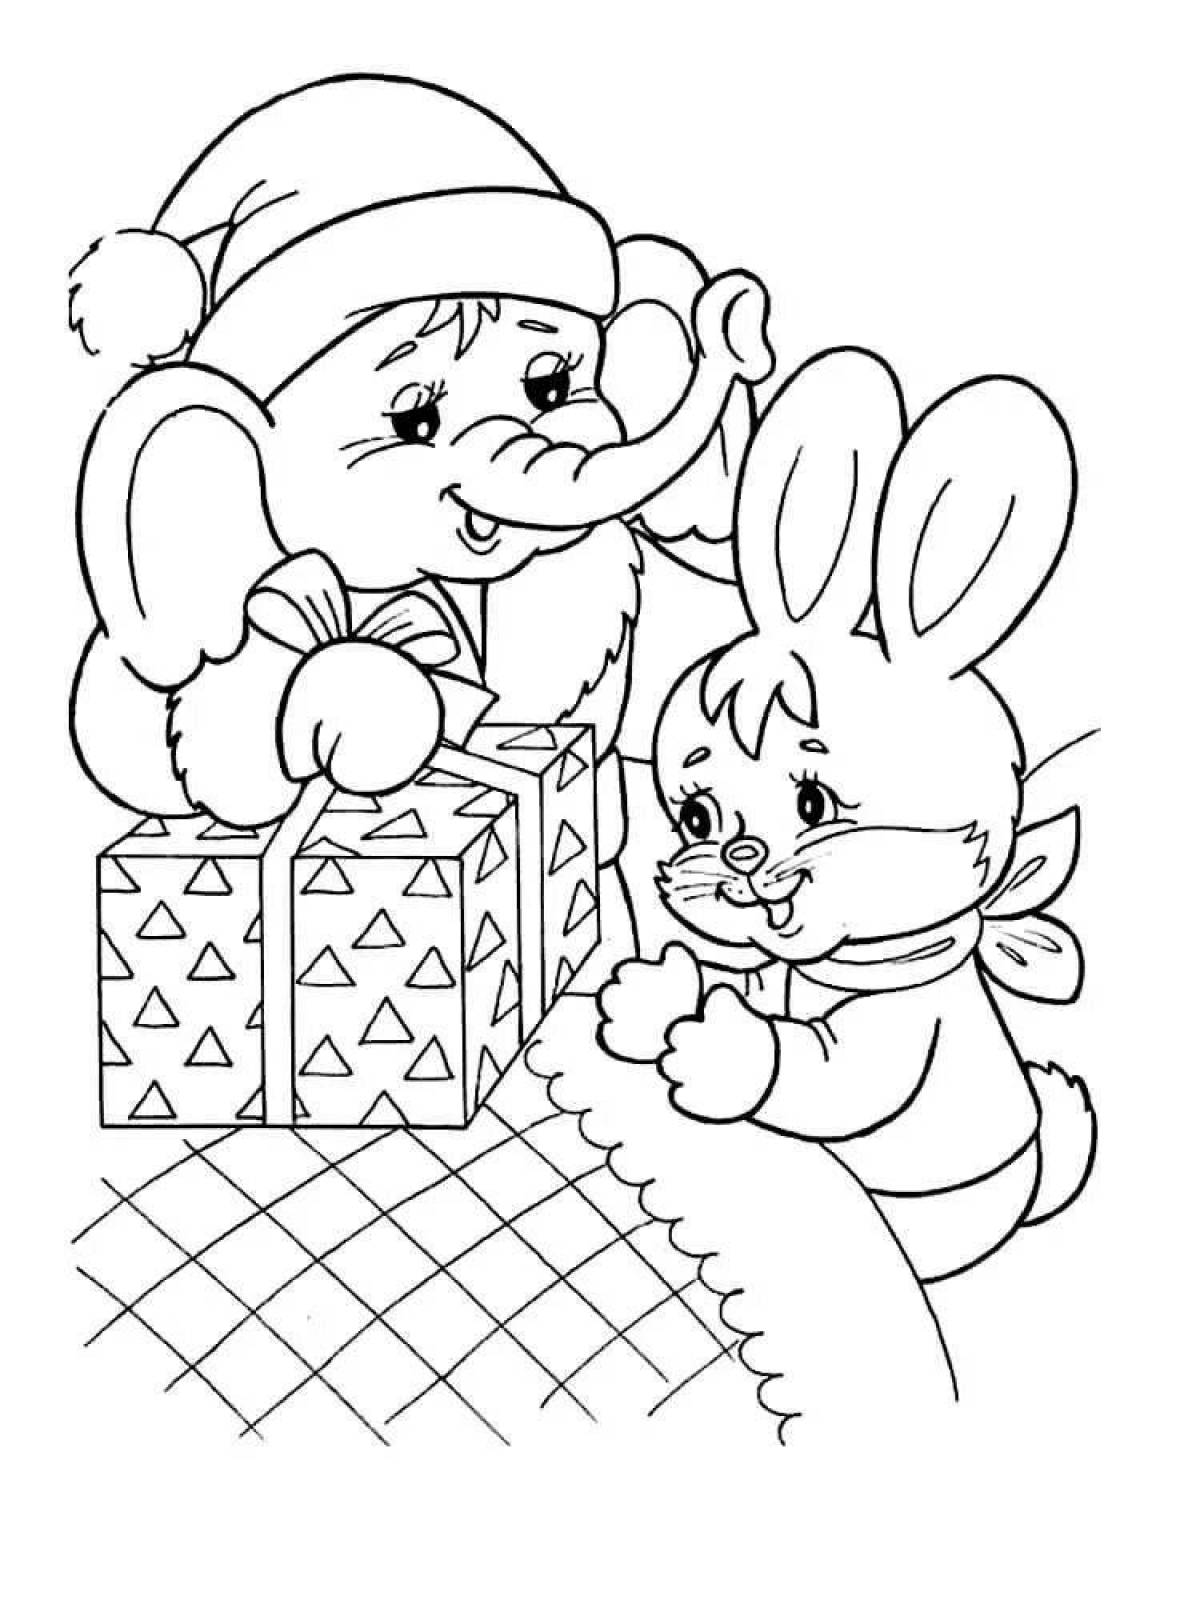 Праздничная раскраска кролик новый год